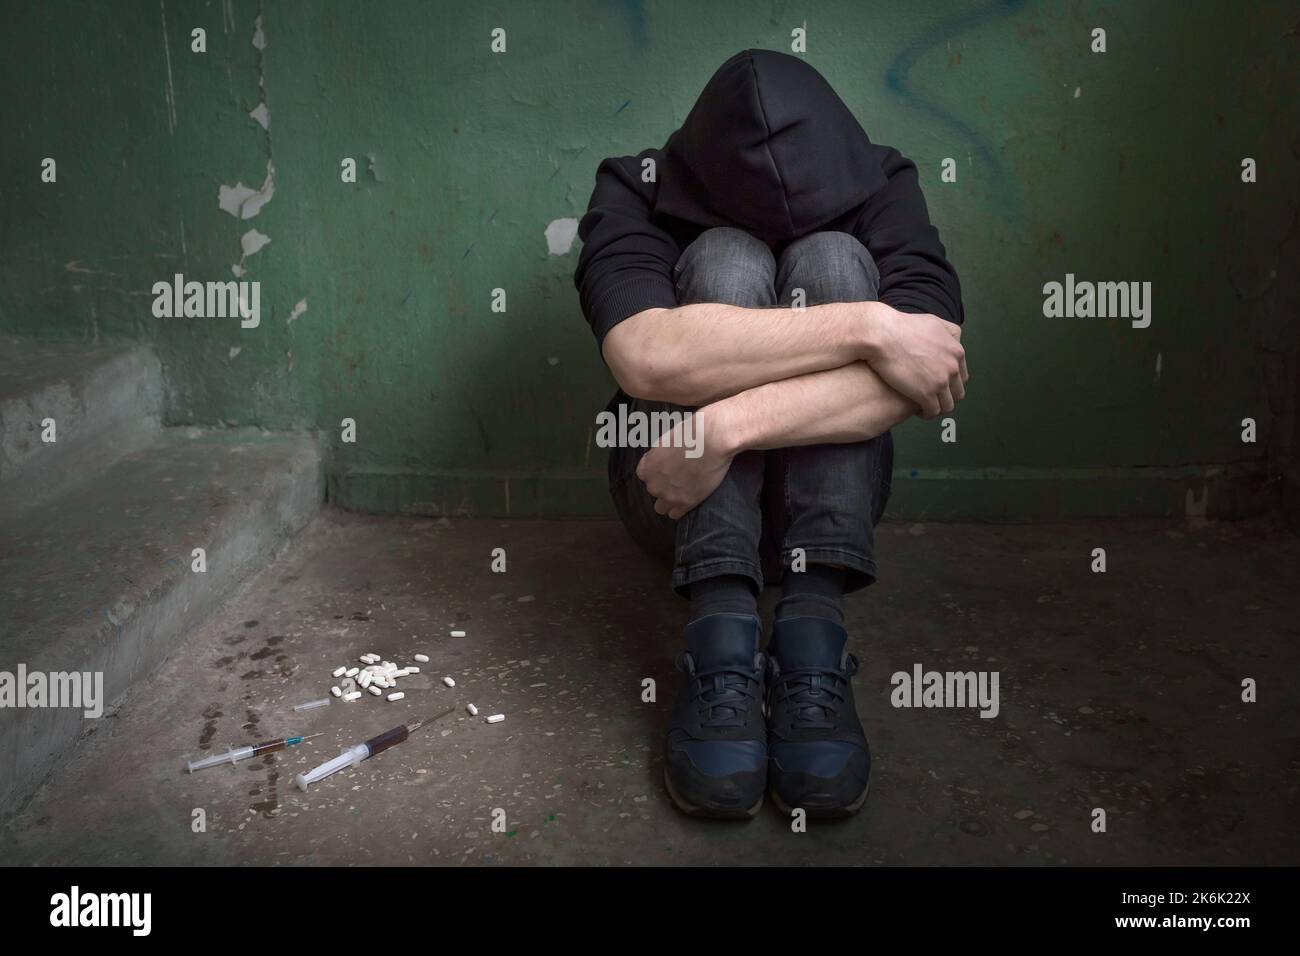 Un jeune drogué avec des armes pliées dans une maison abandonnée. Homme éprouvant une crise de toxicomanie, dépression. Concept de dépendance. Banque D'Images